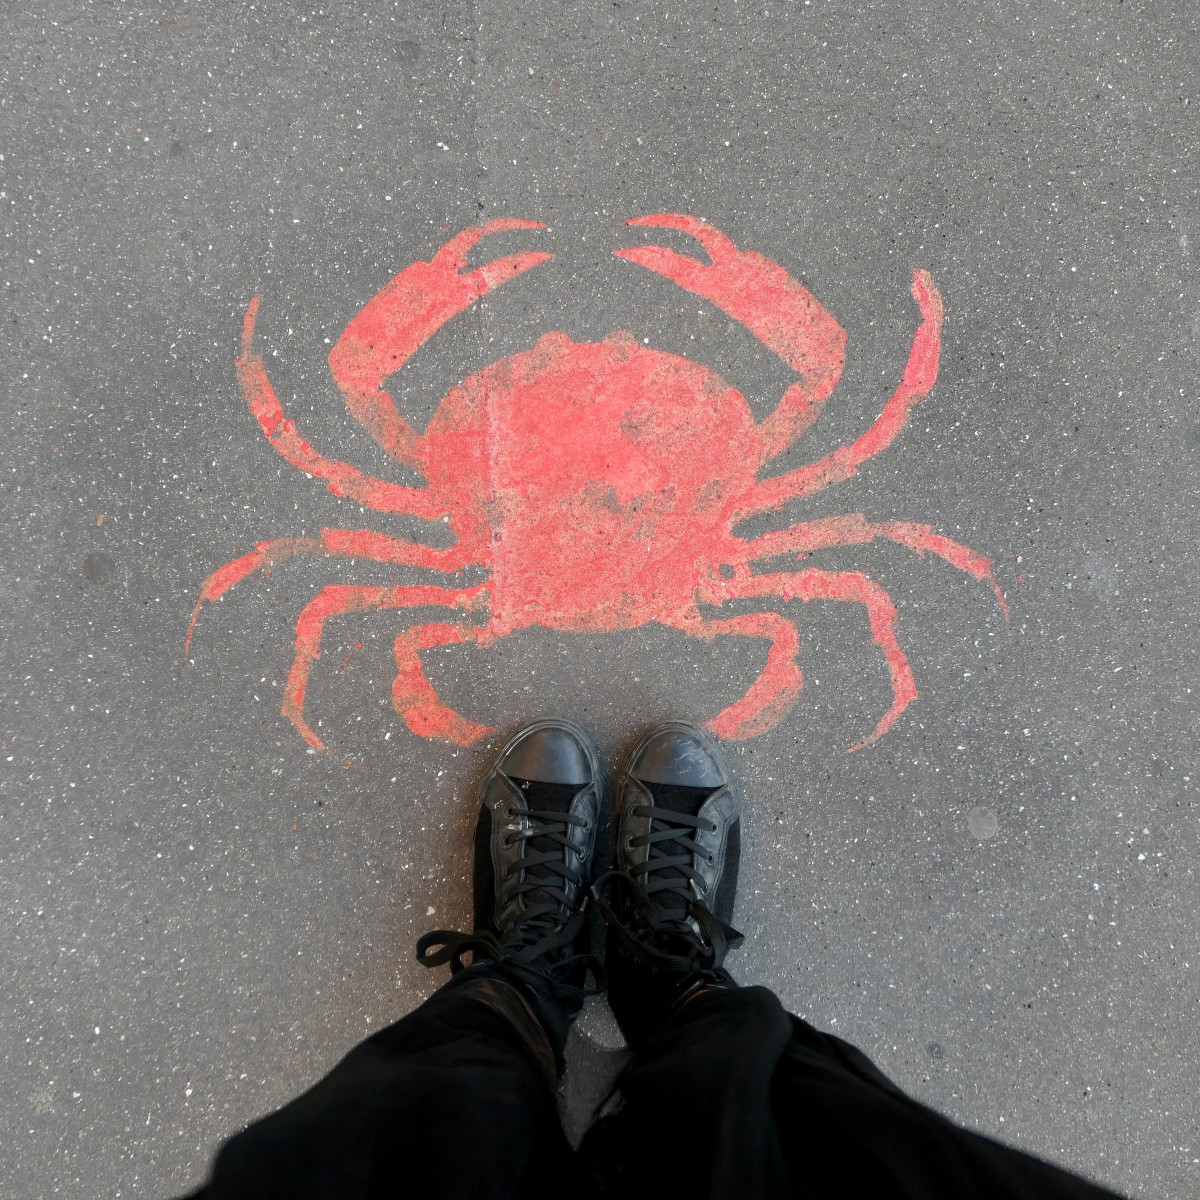 Pieds devant un graffiti de crabe rouge sur le sol